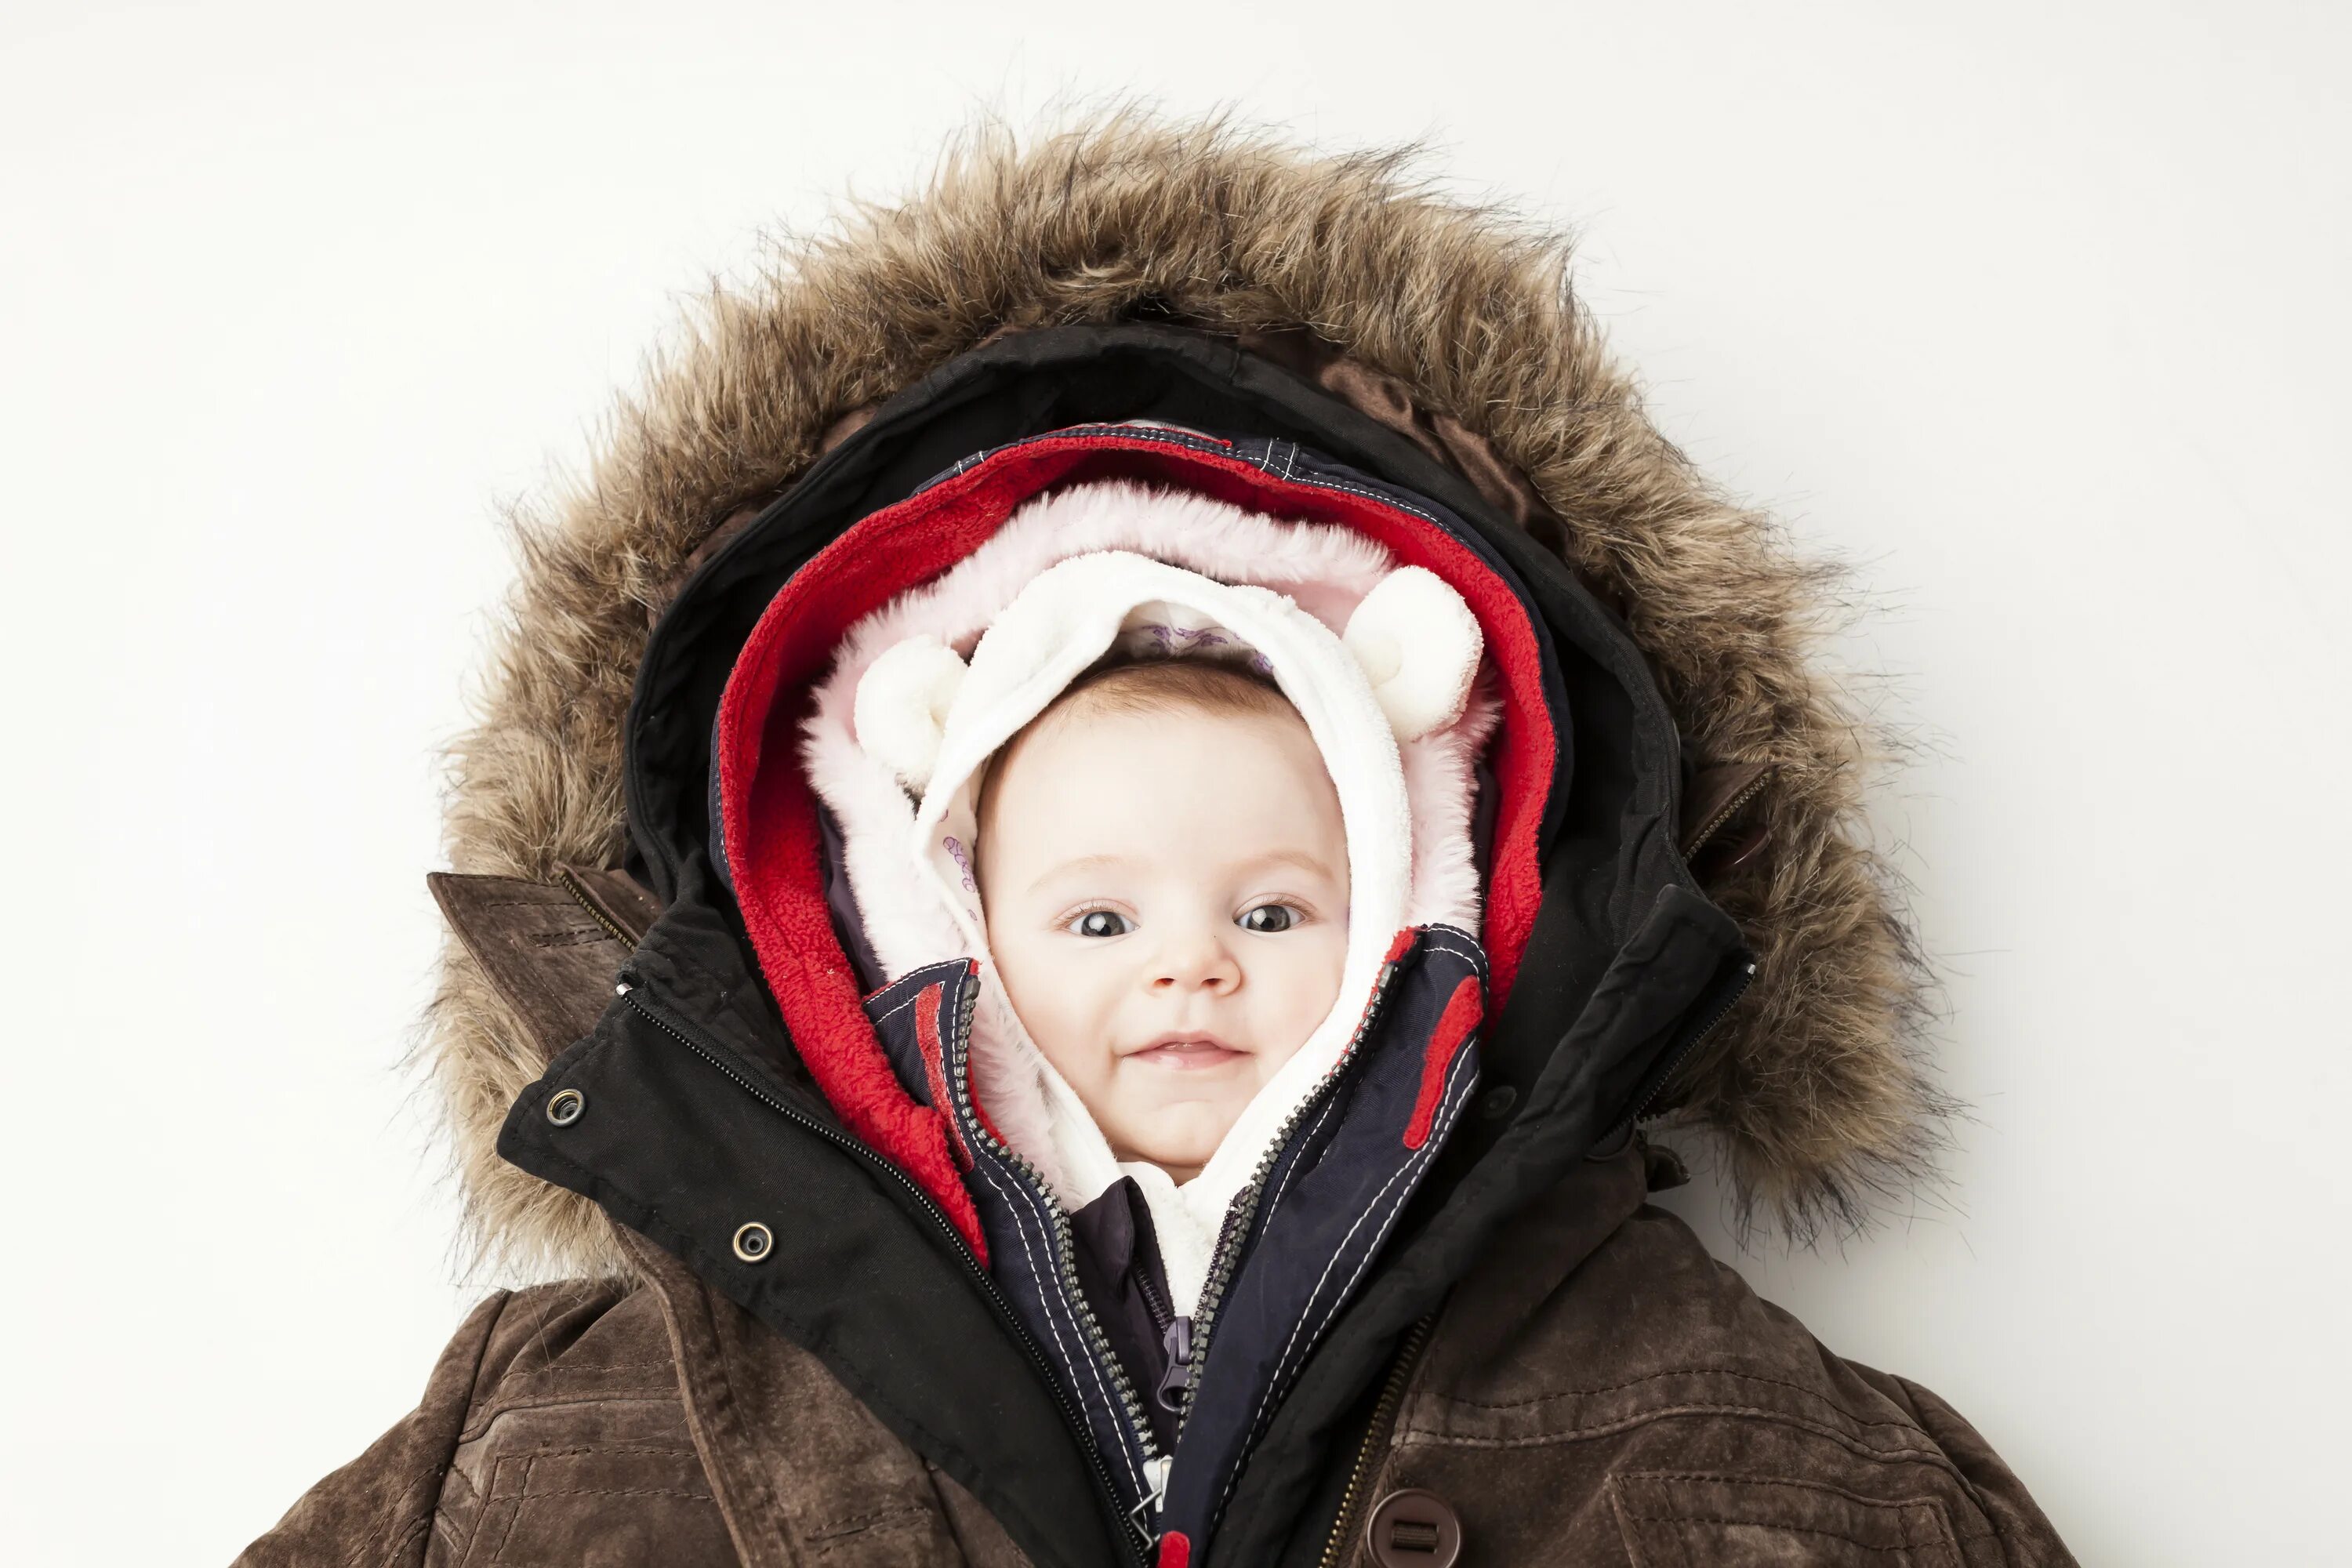 Дети одевались потеплее. Укутанный ребенок. Закутанный ребенок зимой. Ребенок тепло одет. Укутанный ребенок зимой.